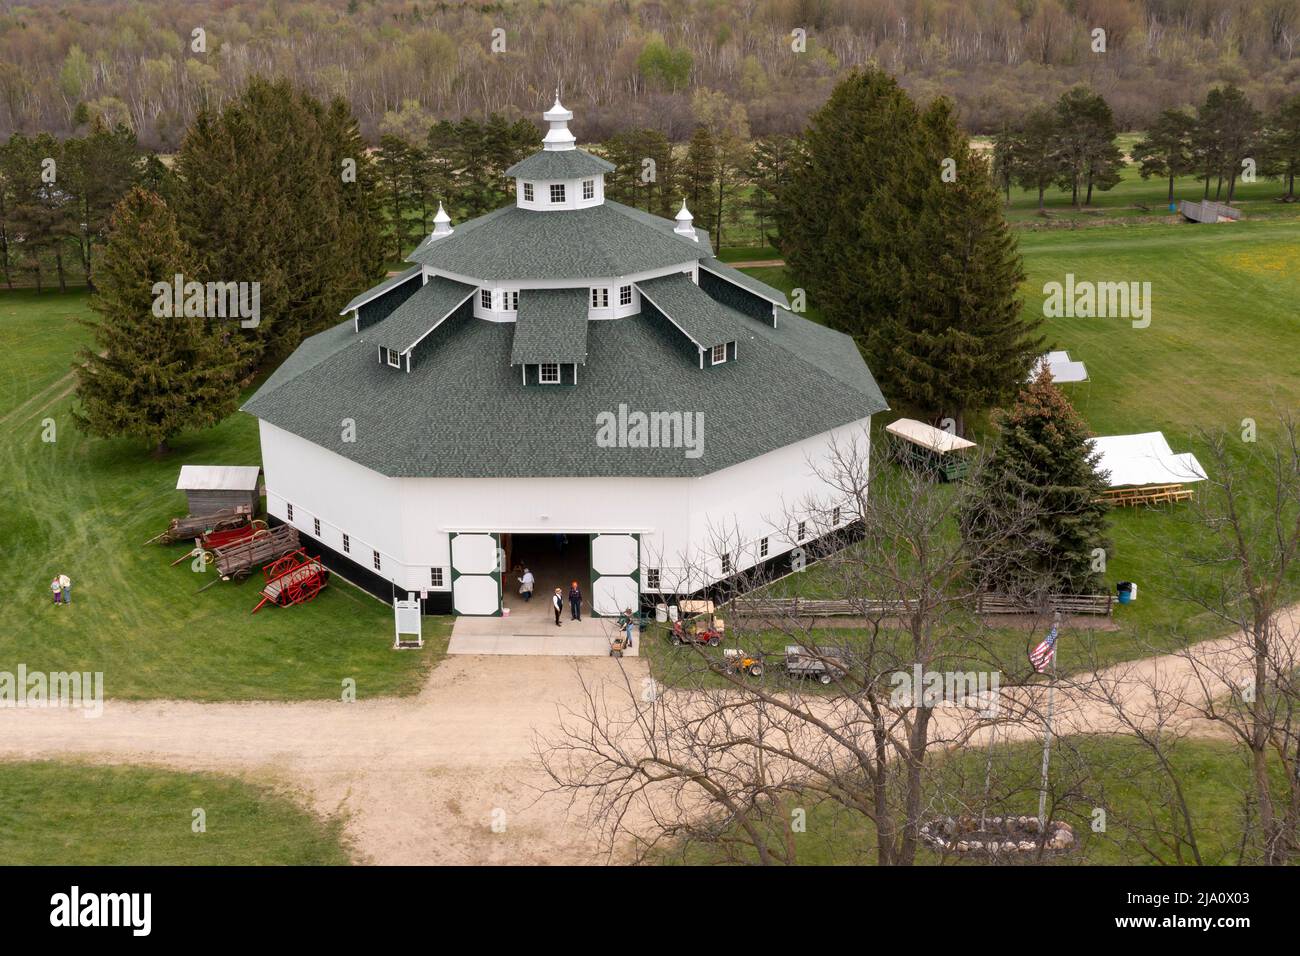 Gagetown, Michigan - die Daumenachteckbarn in der Daumenregion von Michigan. Die seltene achtseitige Scheune wurde 1923 erbaut. Es ist heute ein Landwirtschaftsmuseum. Stockfoto